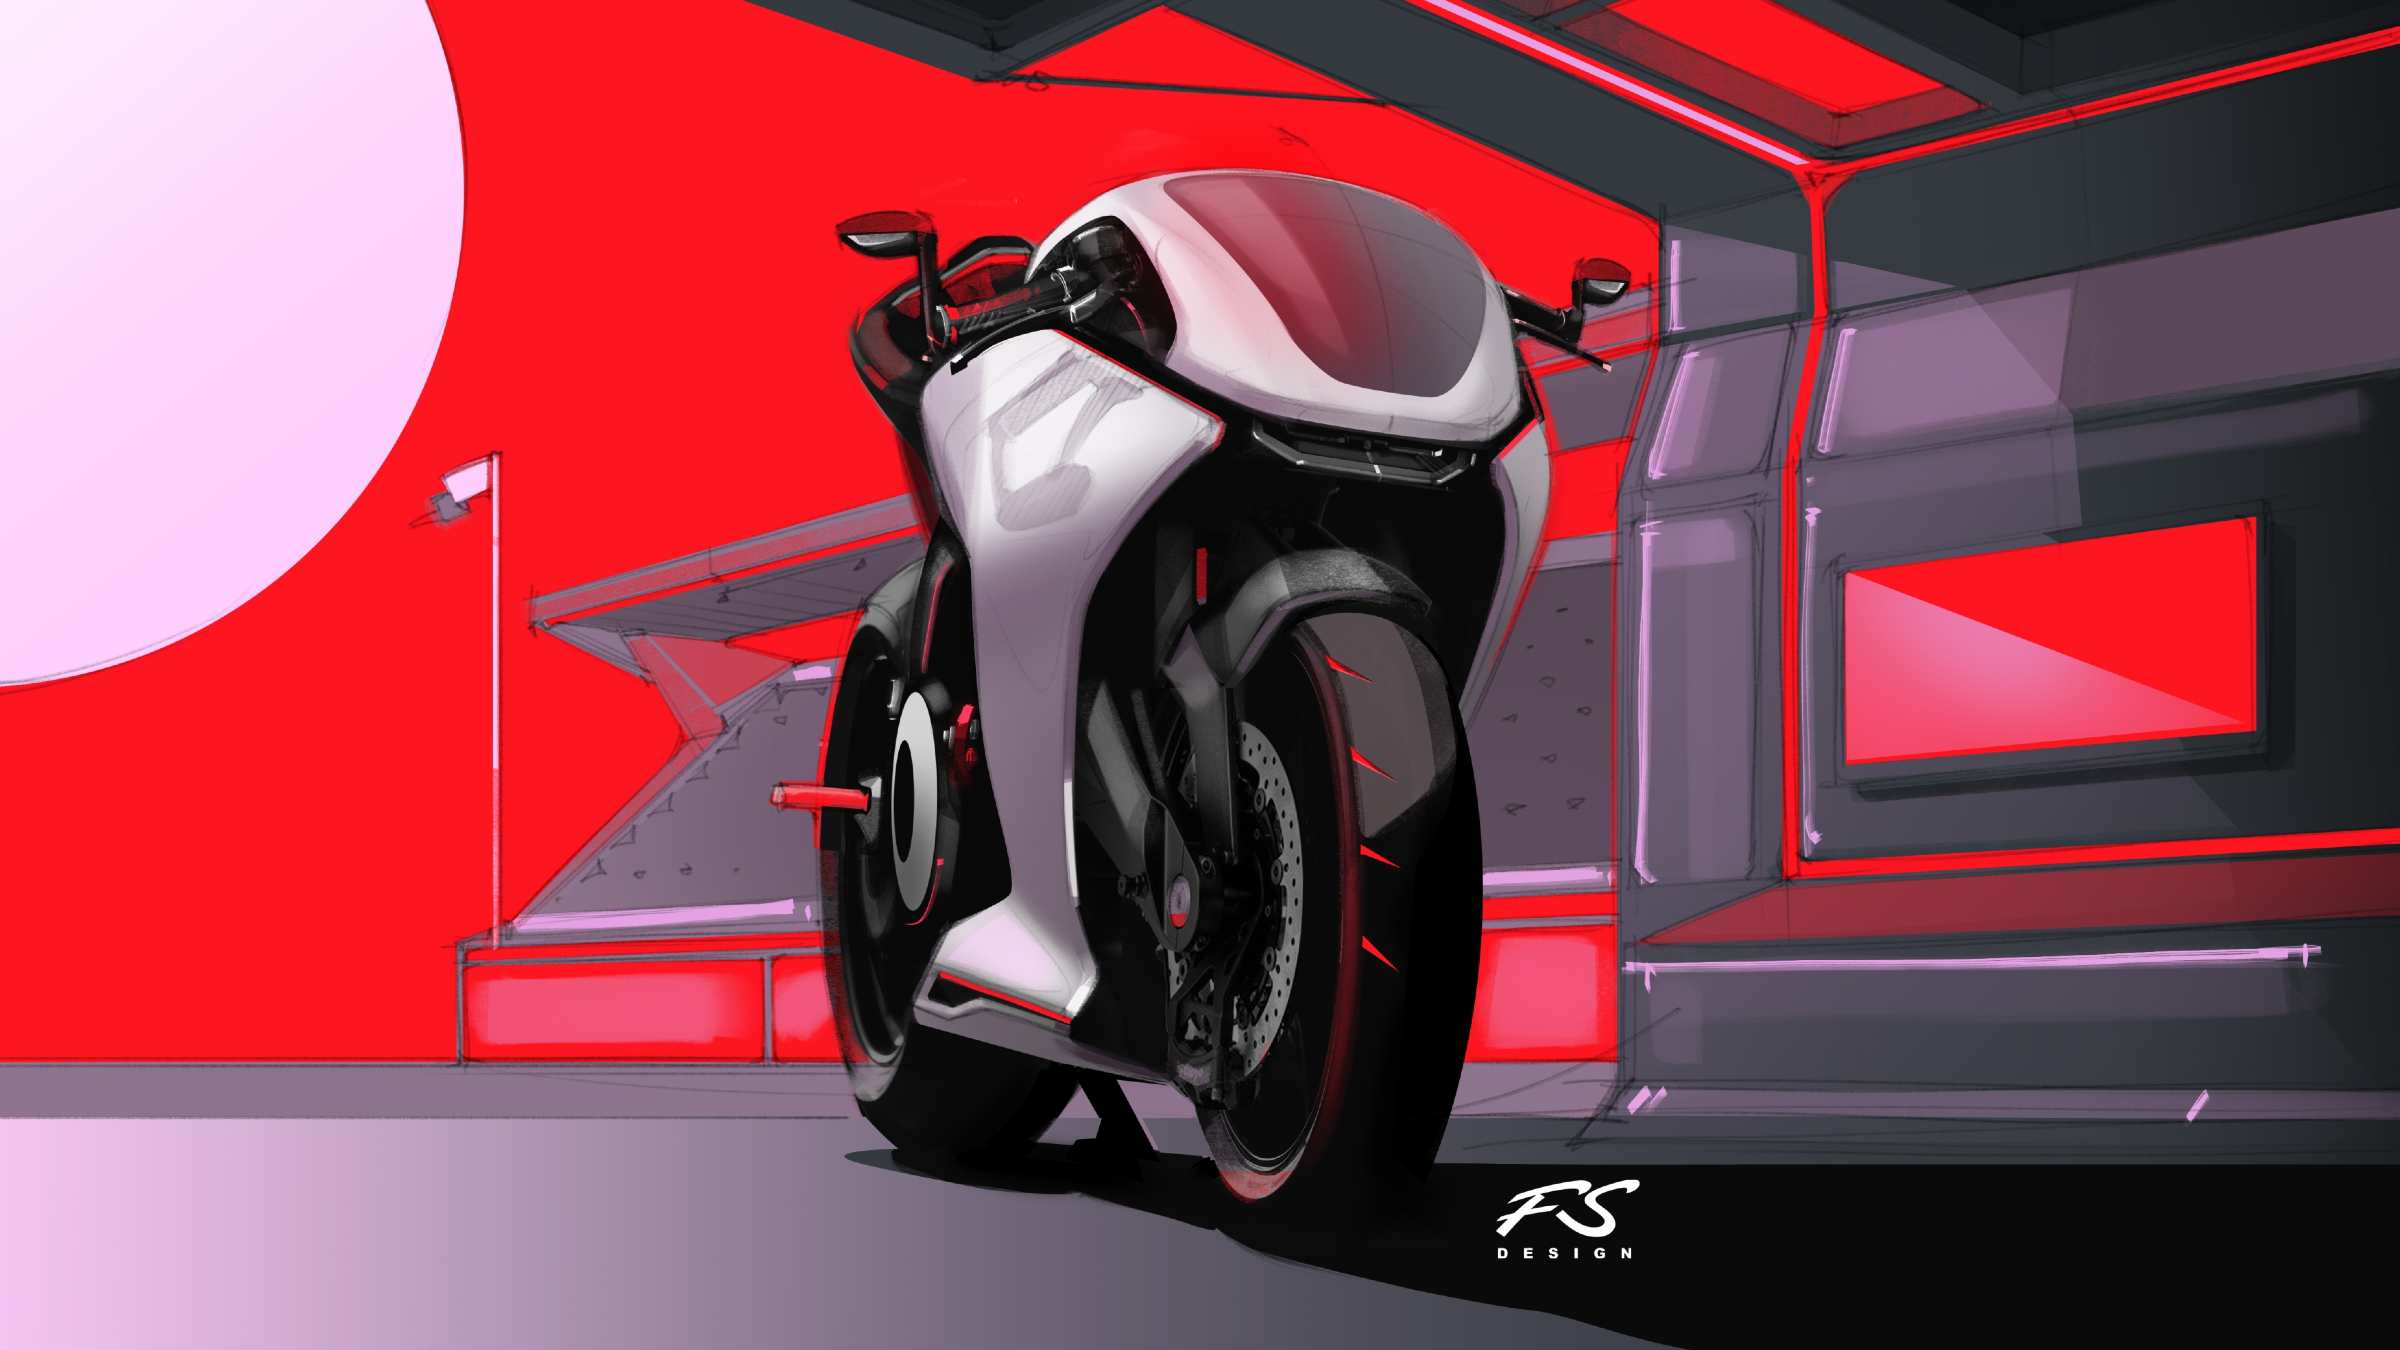 uno de los mejores diseñadores crea la moto del futuro que podría pasar por la de akira